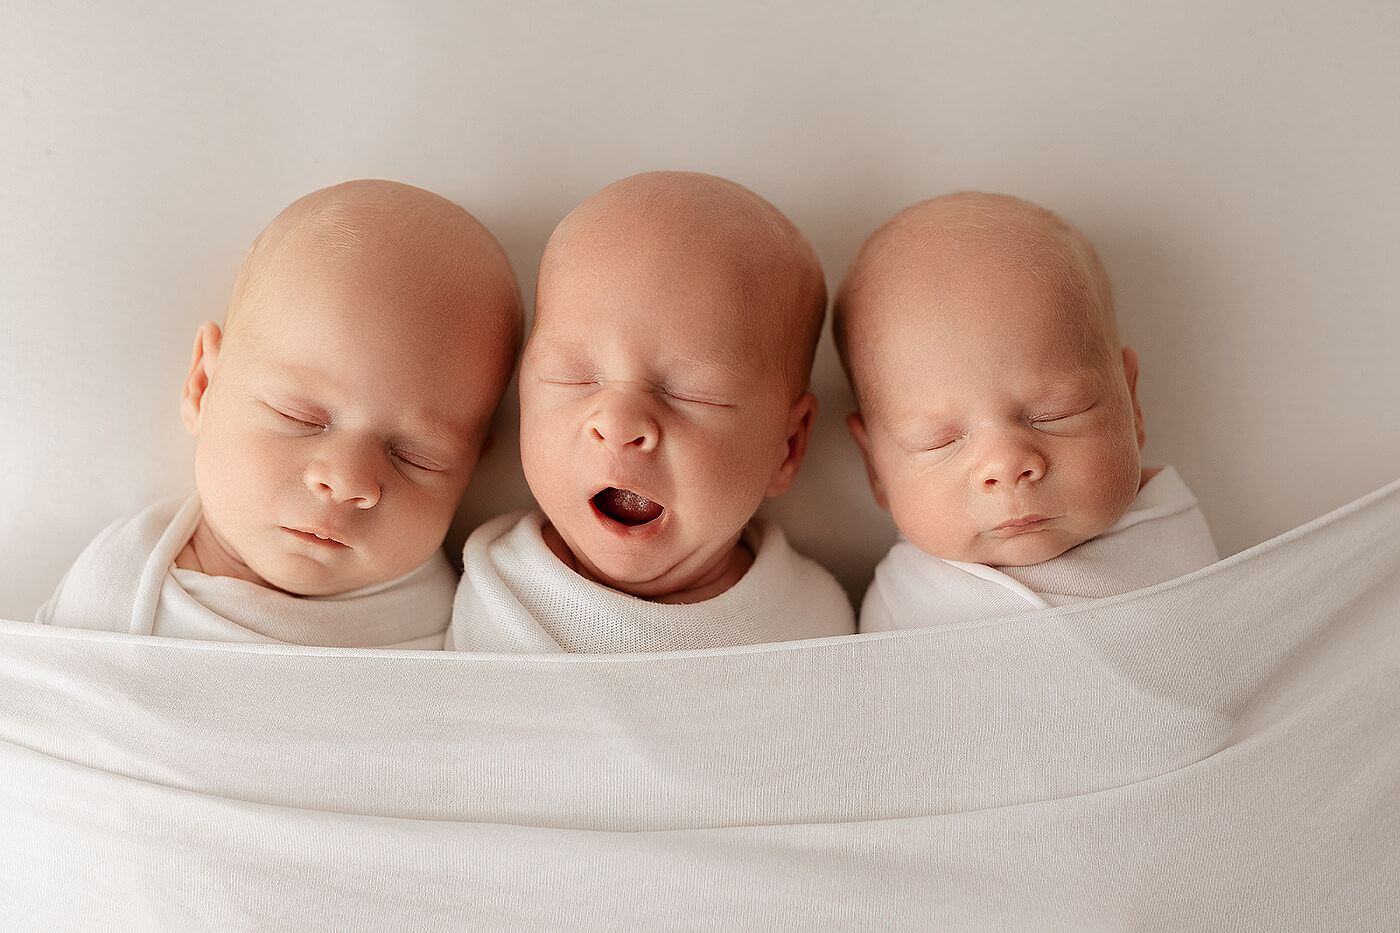 Sesja noworodkowa trojaczków. Sesja noworodkowa trojaczków w studio. Trzy śpiące noworodki.